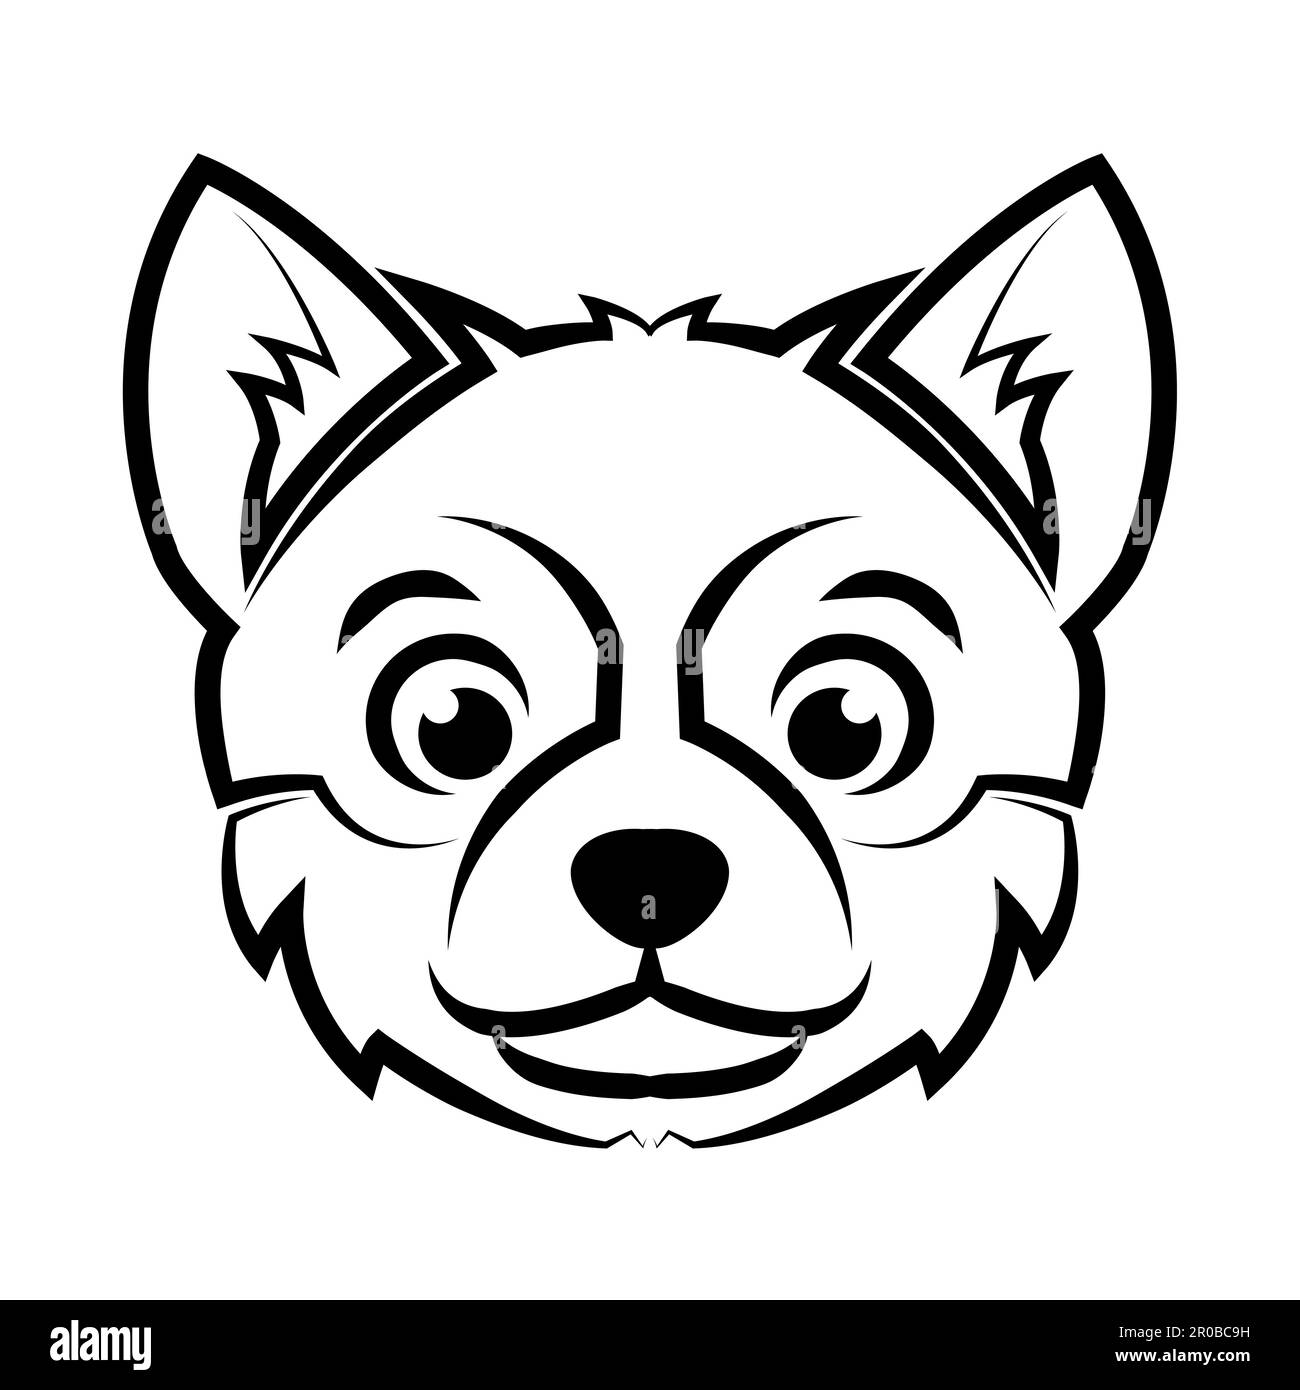 Dessin de la tête de chien en noir et blanc. Bon usage pour symbole, mascotte, icône, avatar, tatouage, T-shirt, logo ou tout autre motif Illustration de Vecteur